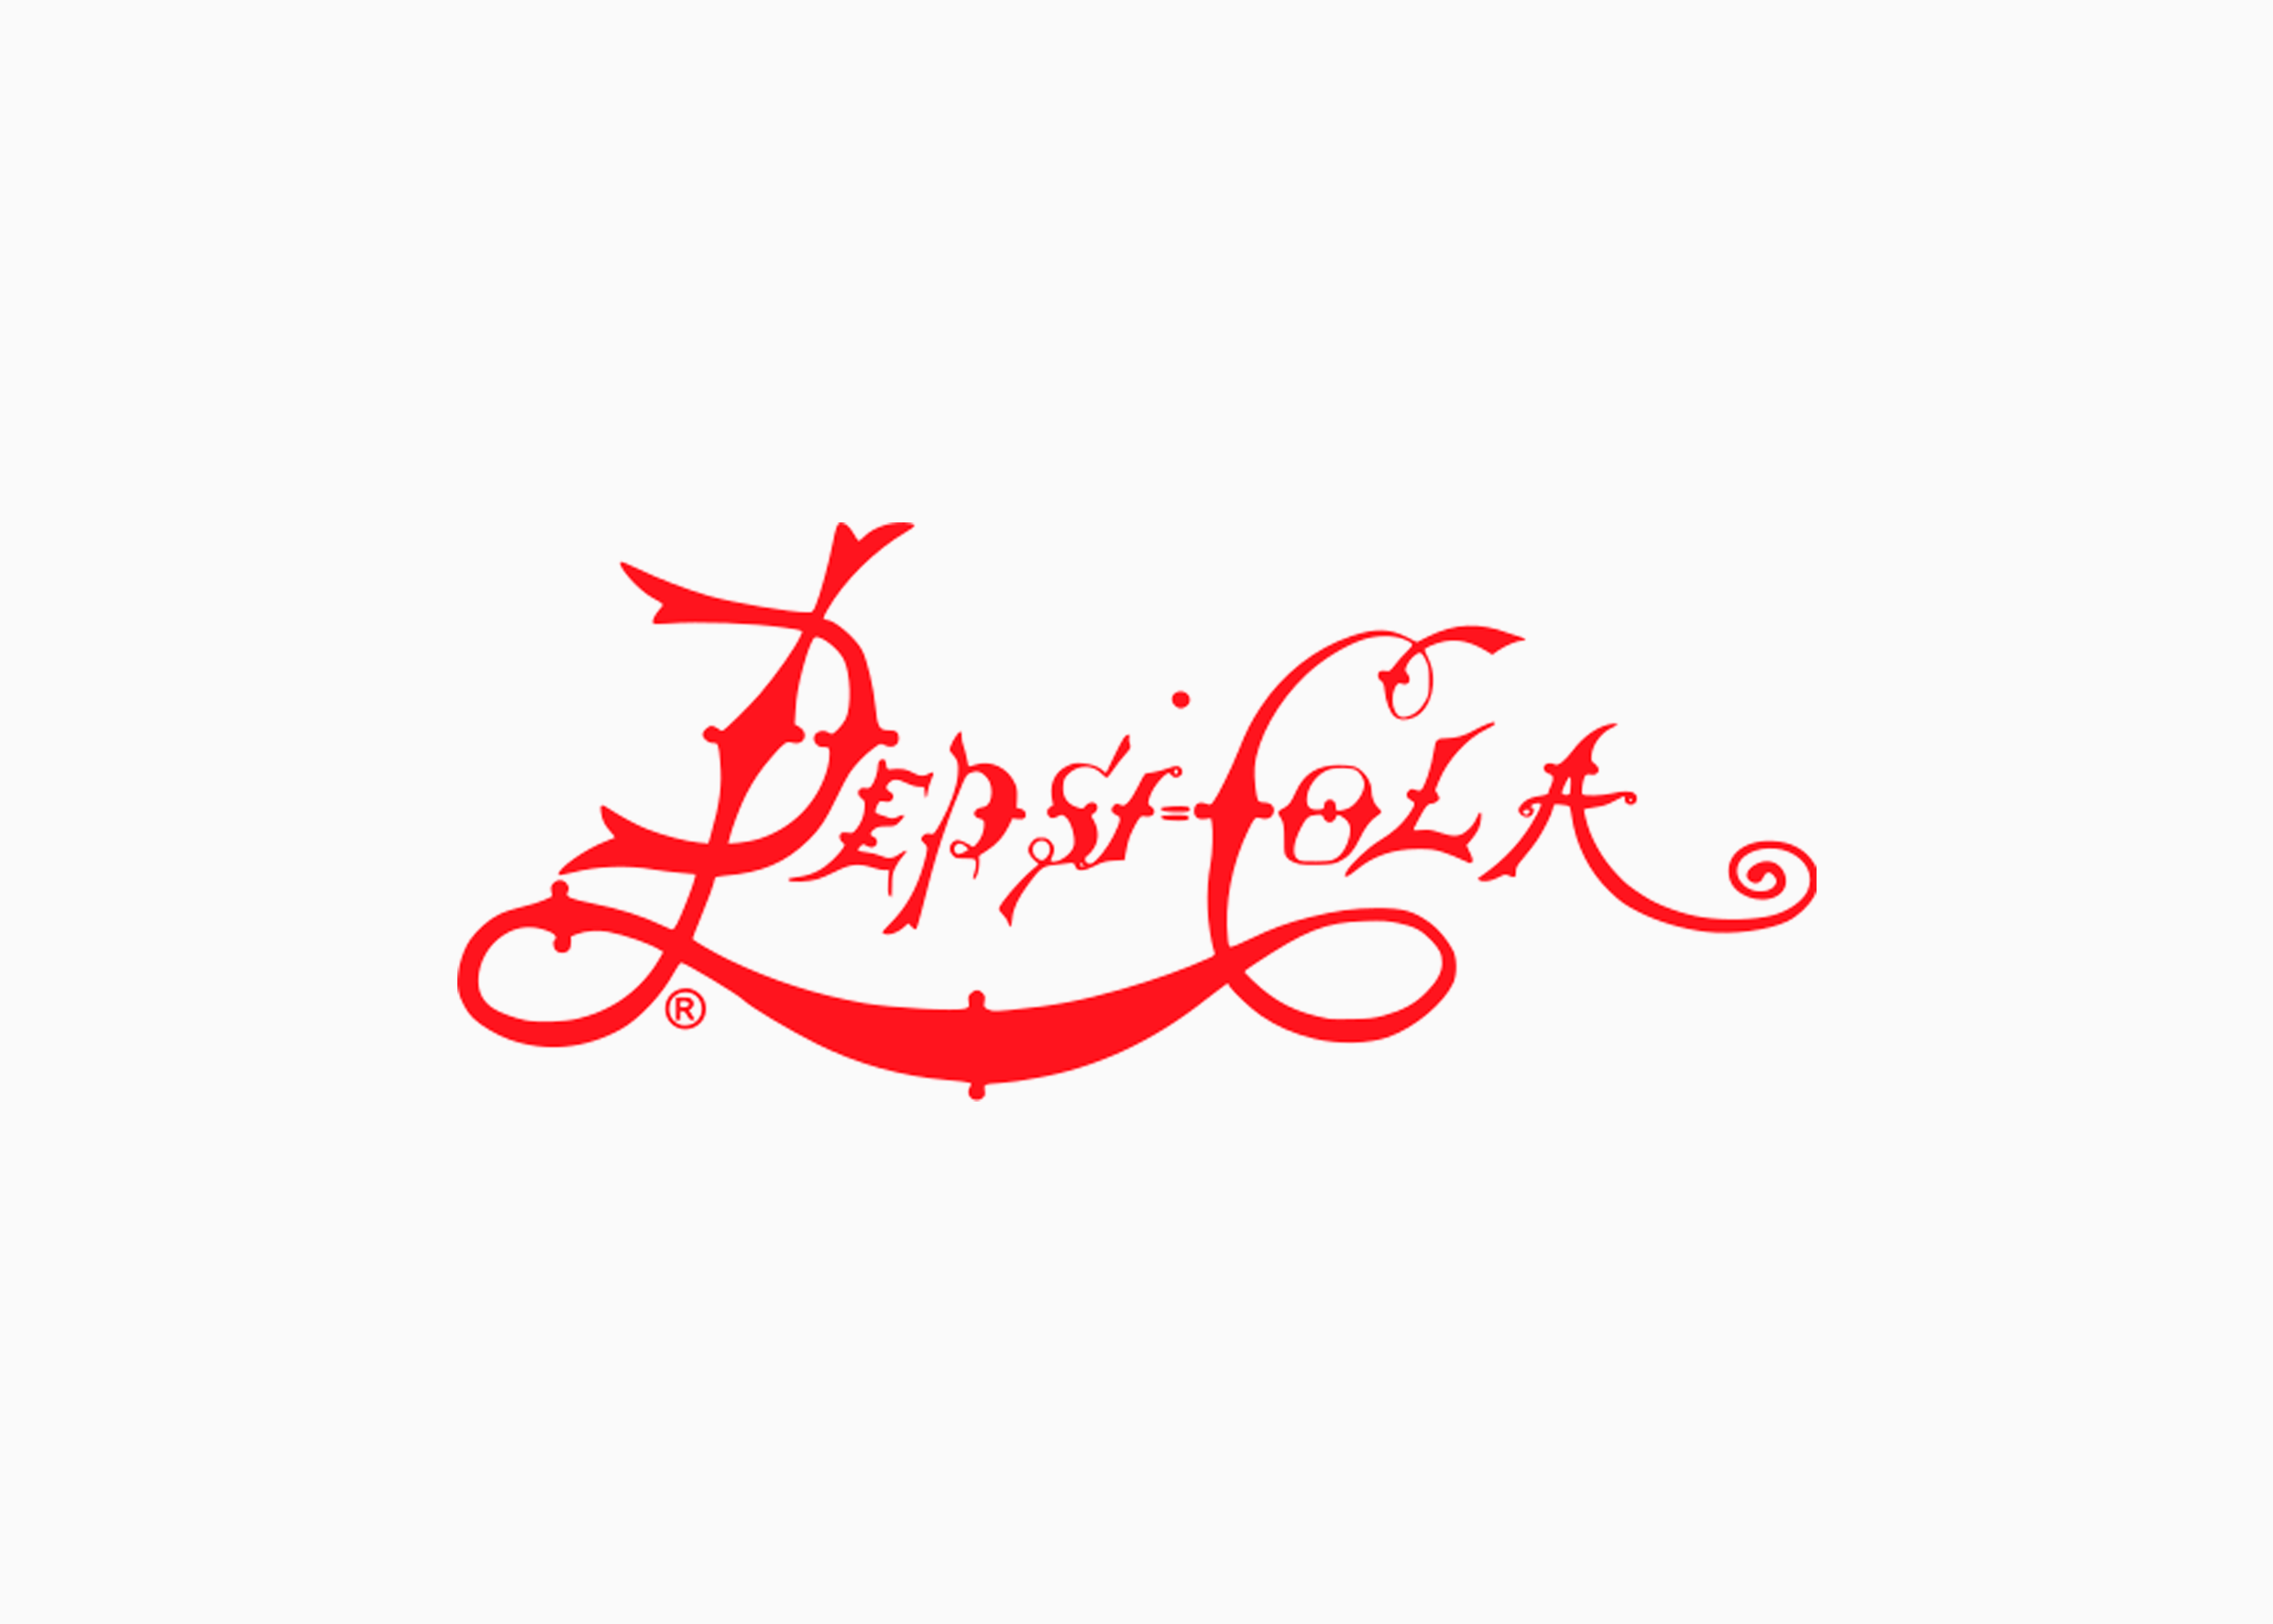 Первый Логотип Пепси 1898